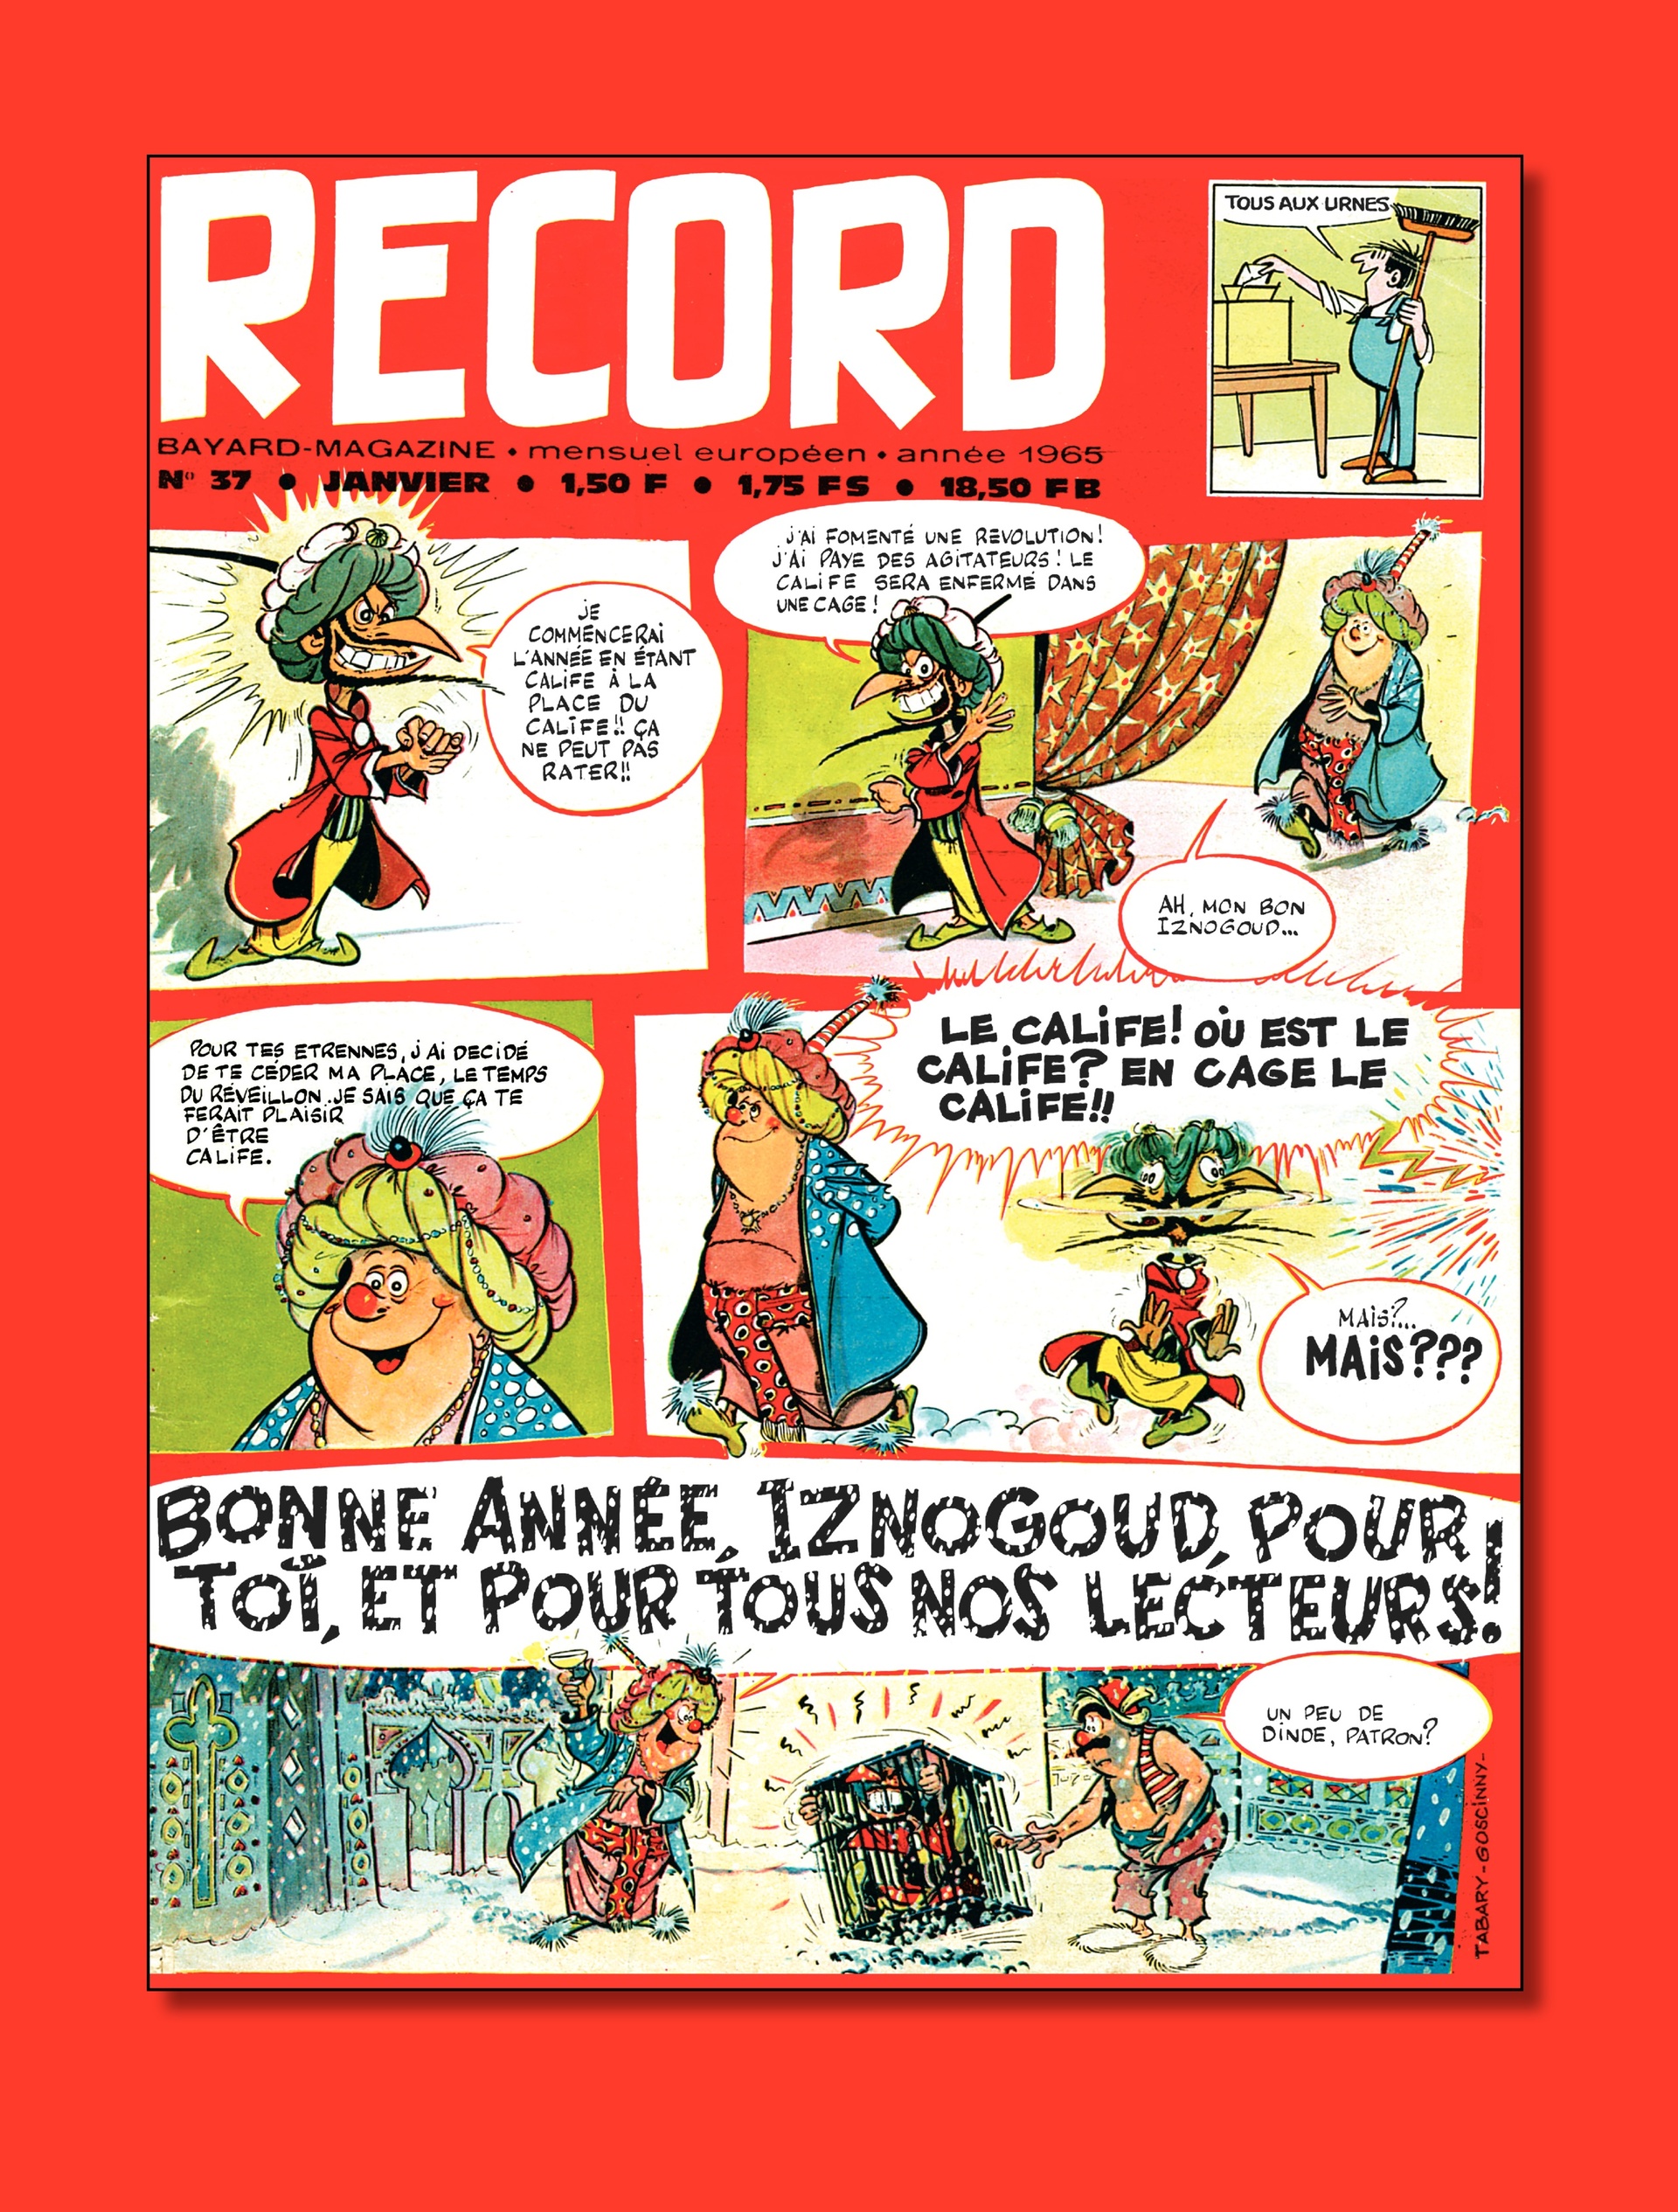 Couvertures pour Record n° 37 (janvier 1965) et Pilote n° 446 (mai 1968).